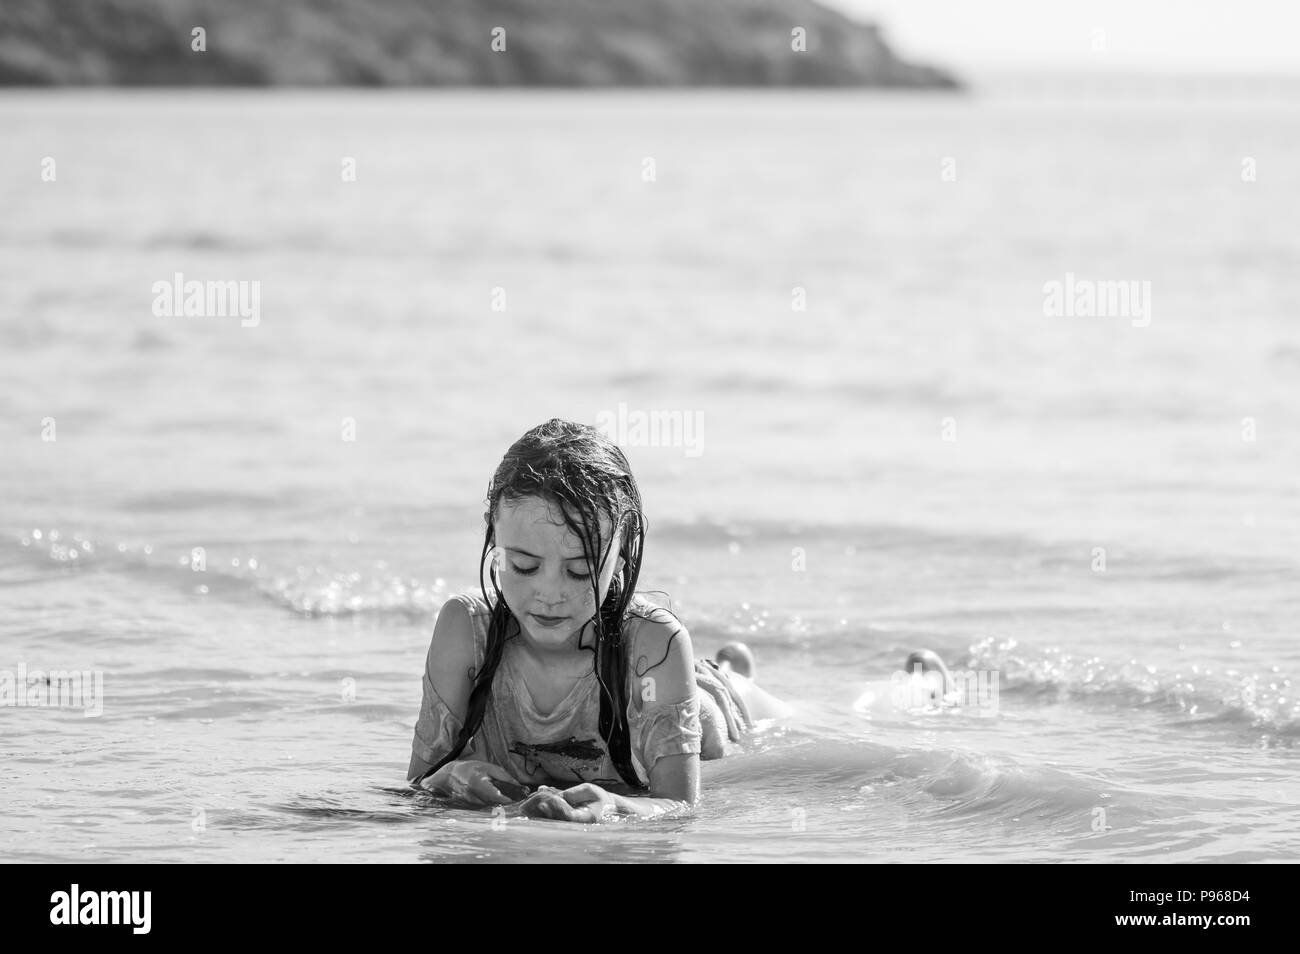 Bambino giacente in surf in bianco e nero. Ragazza giovane giocando in mare, persa nel suo propri pensieri Foto Stock